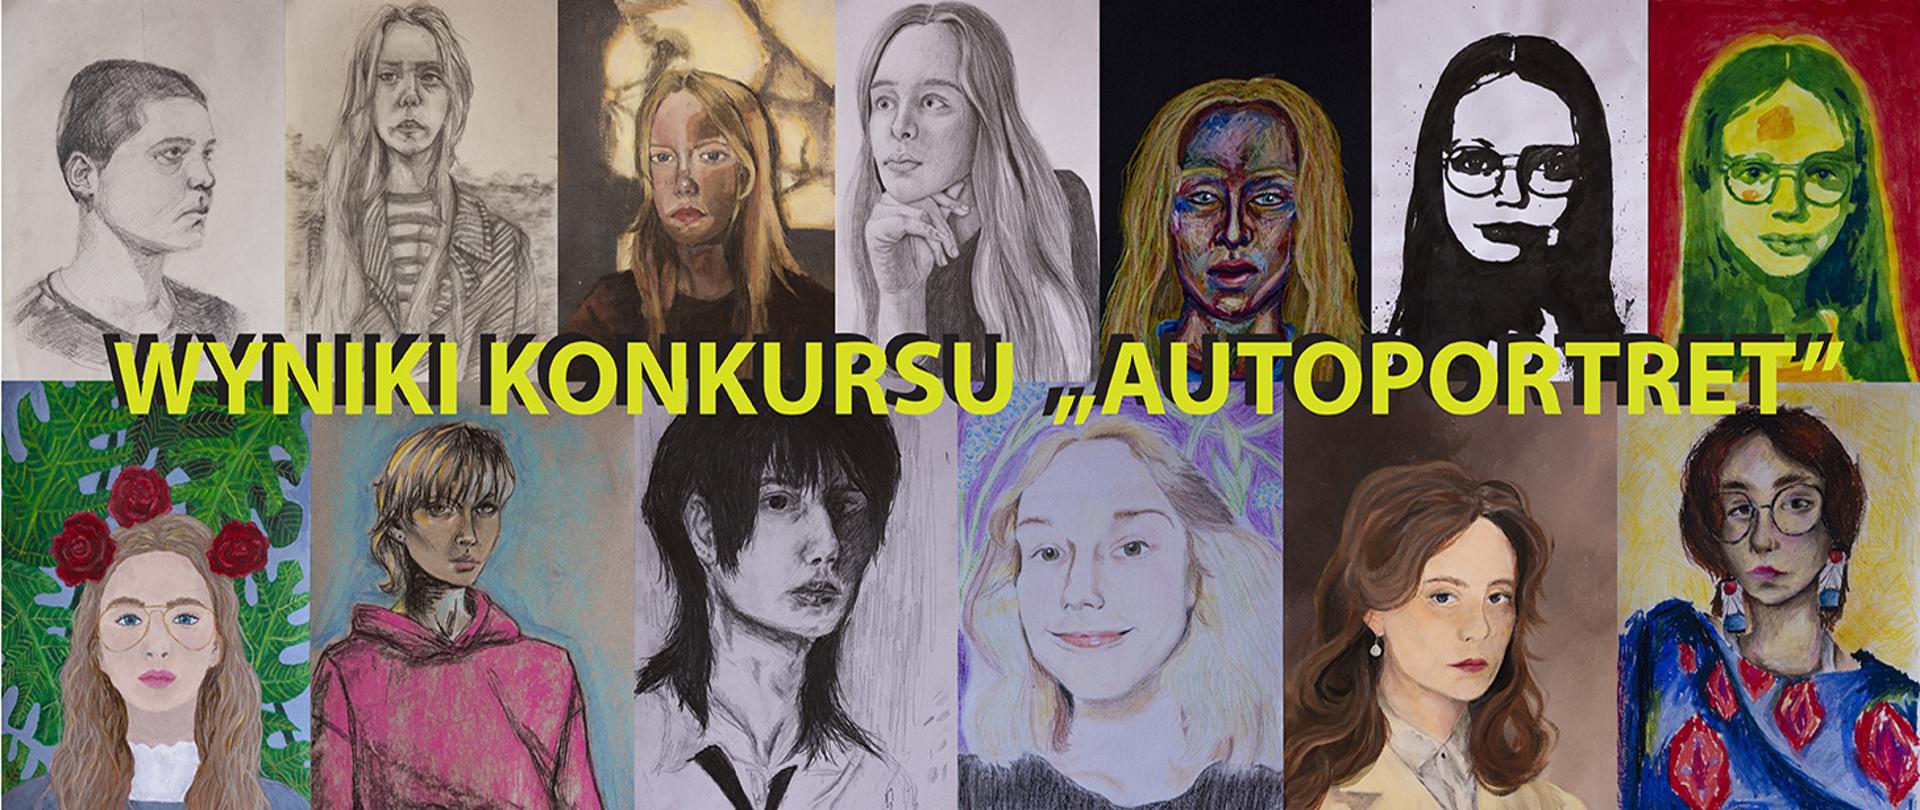 Baner przedstawiający 13 autoportretów oraz napis: wyniki konkursu Autoportret